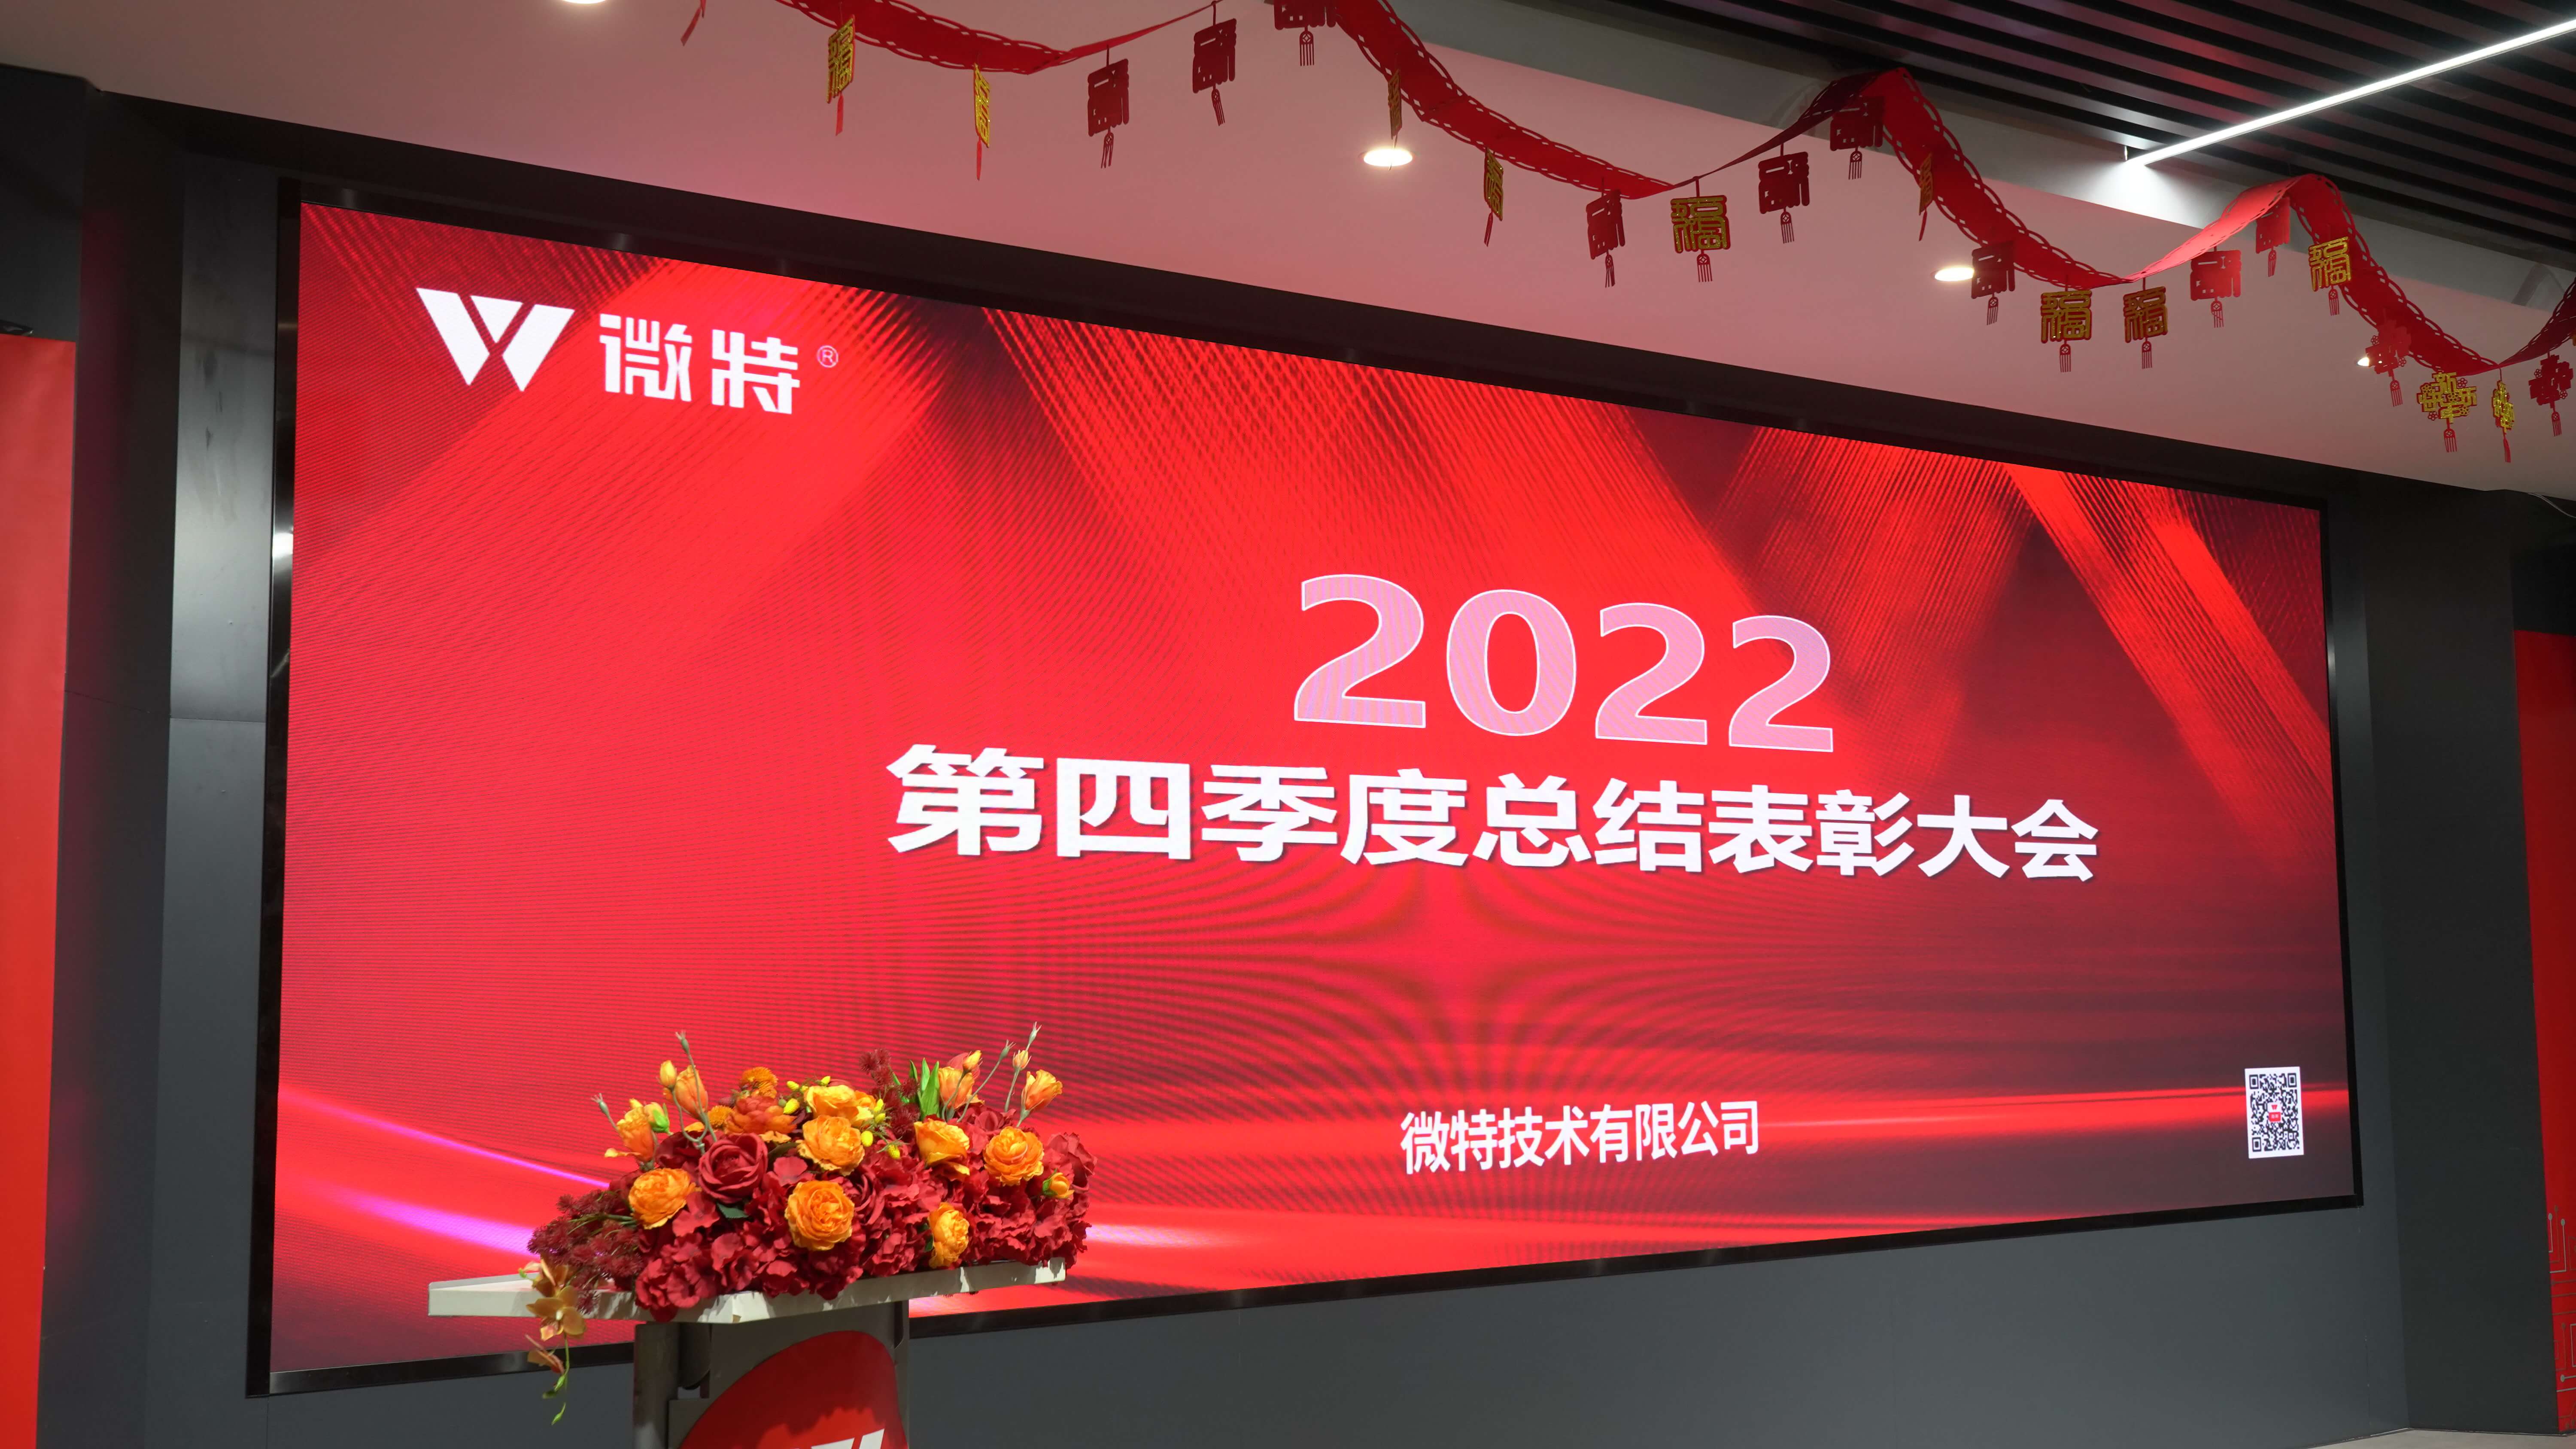 微特2022年第四季度总结表彰大会及新年誓师会顺利召开